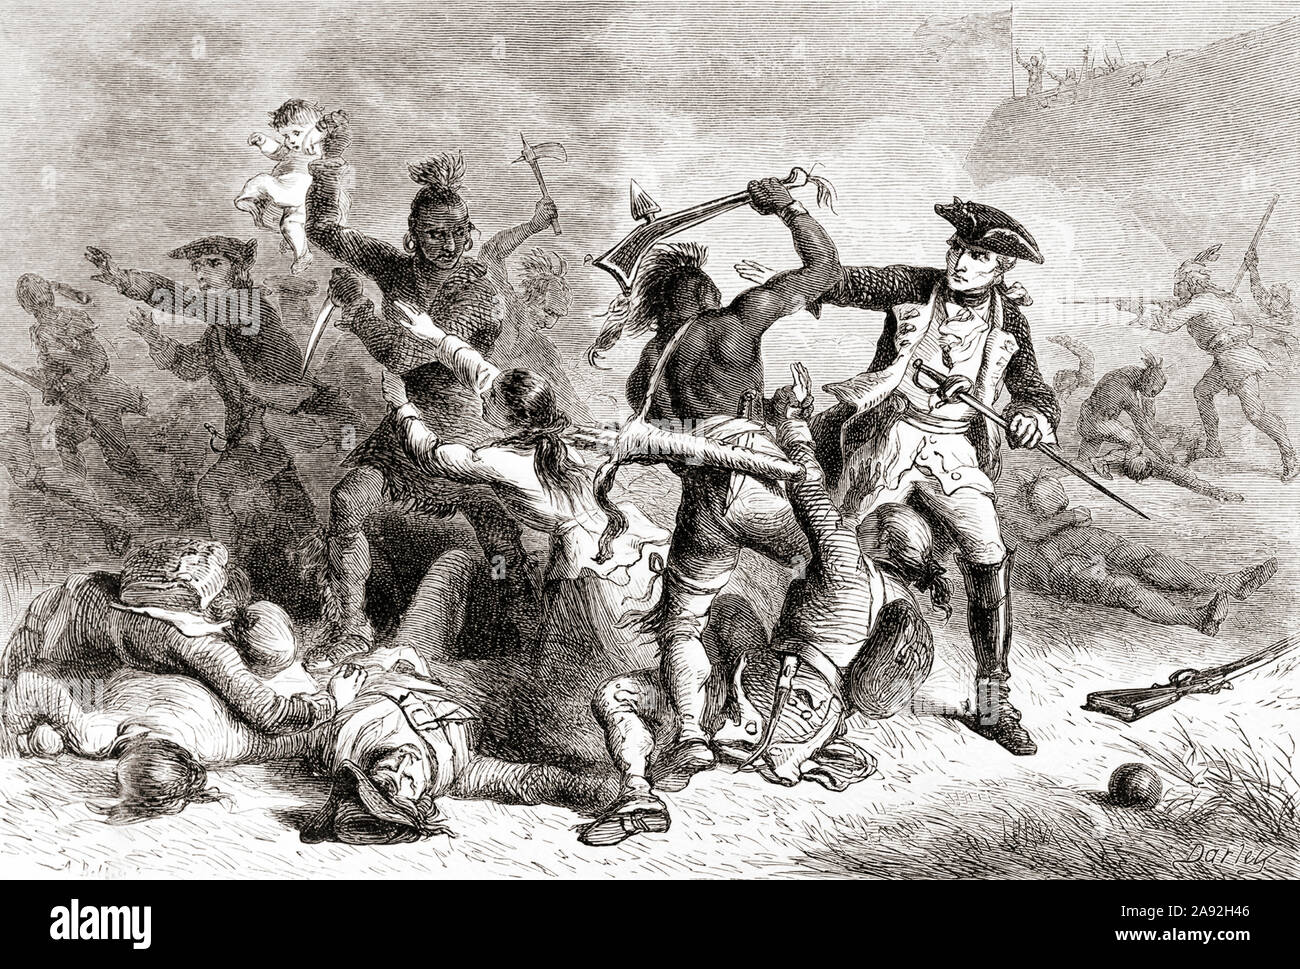 Der französische General Louis-Joseph de Montcalm, 1712-1759. Hier zu sehen, der versucht, seine Indianischen verbündeten Töten von britischen Soldaten und Zivilisten, die nach der Schlacht von Fort William Henry während des Franzosen- und Indianerkrieg, 1754 aufgegeben hatte - 1763 zu stoppen. Stockfoto